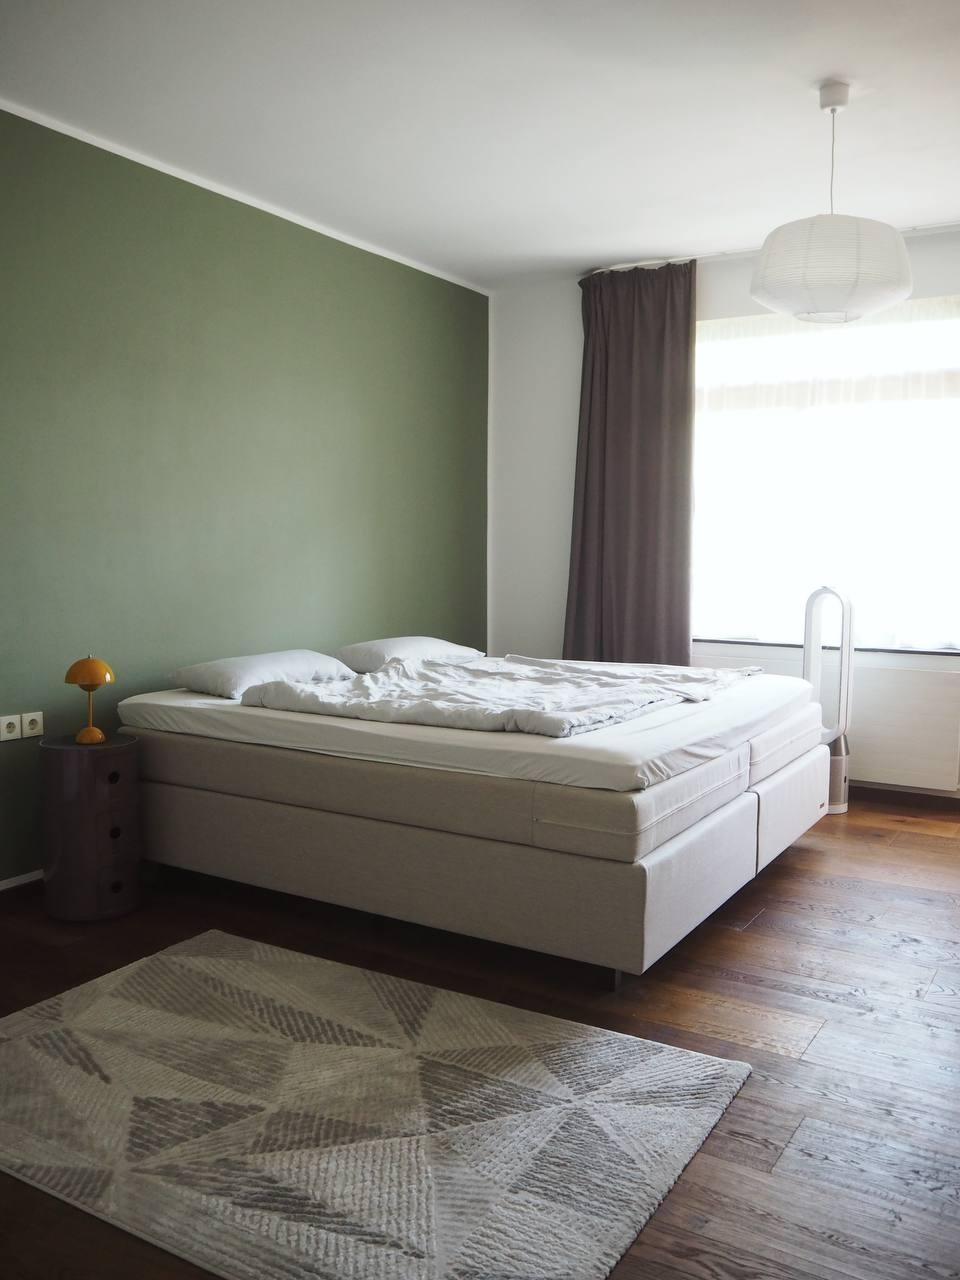 green wall #bedroom #schlafzimmer #yakbett #boxspringbett